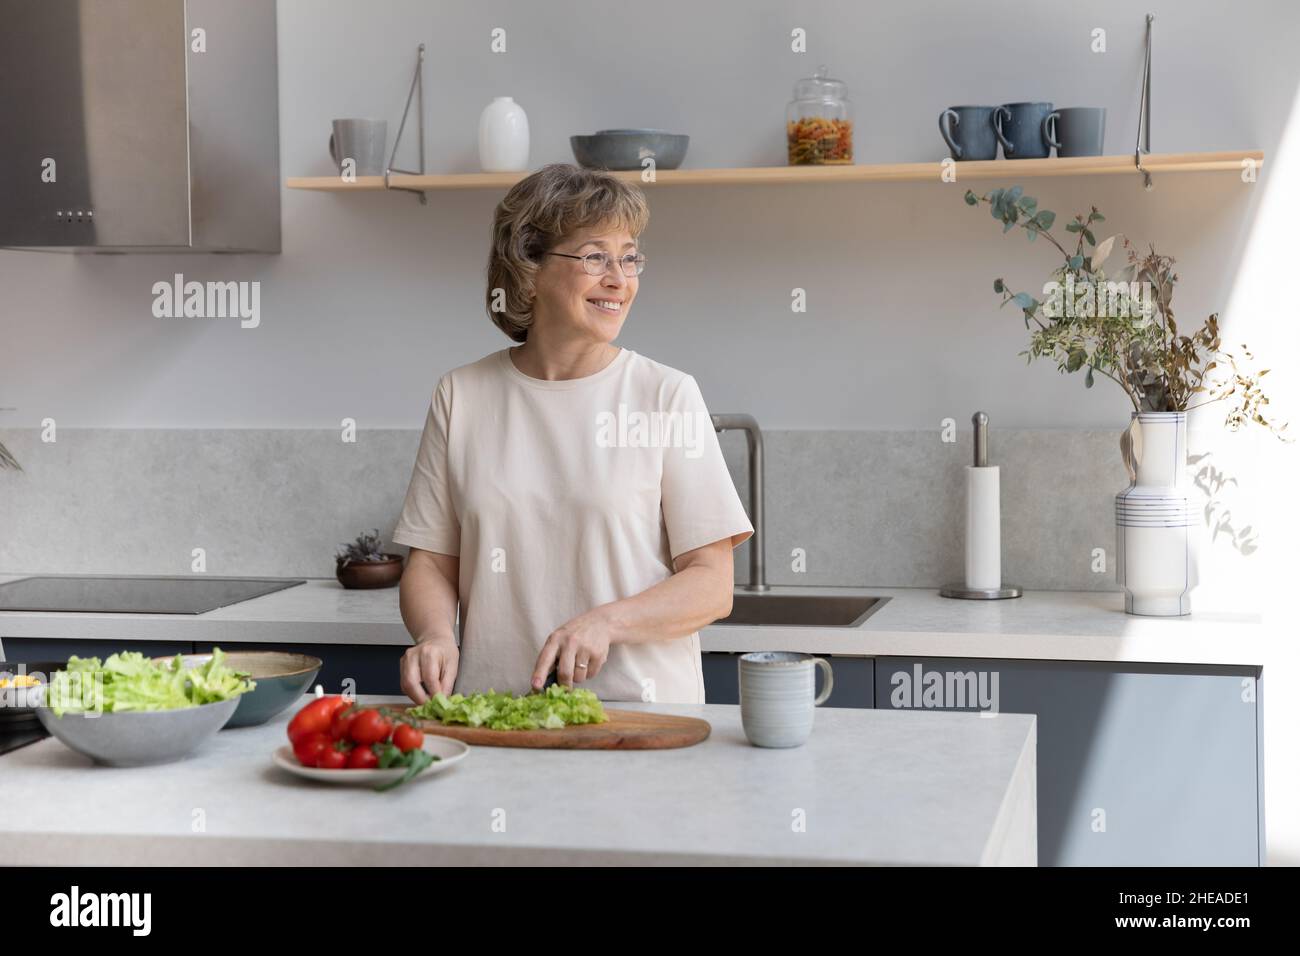 Lächelnde verträumte Frau mittleren Alters, die in der Küche kocht. Stockfoto